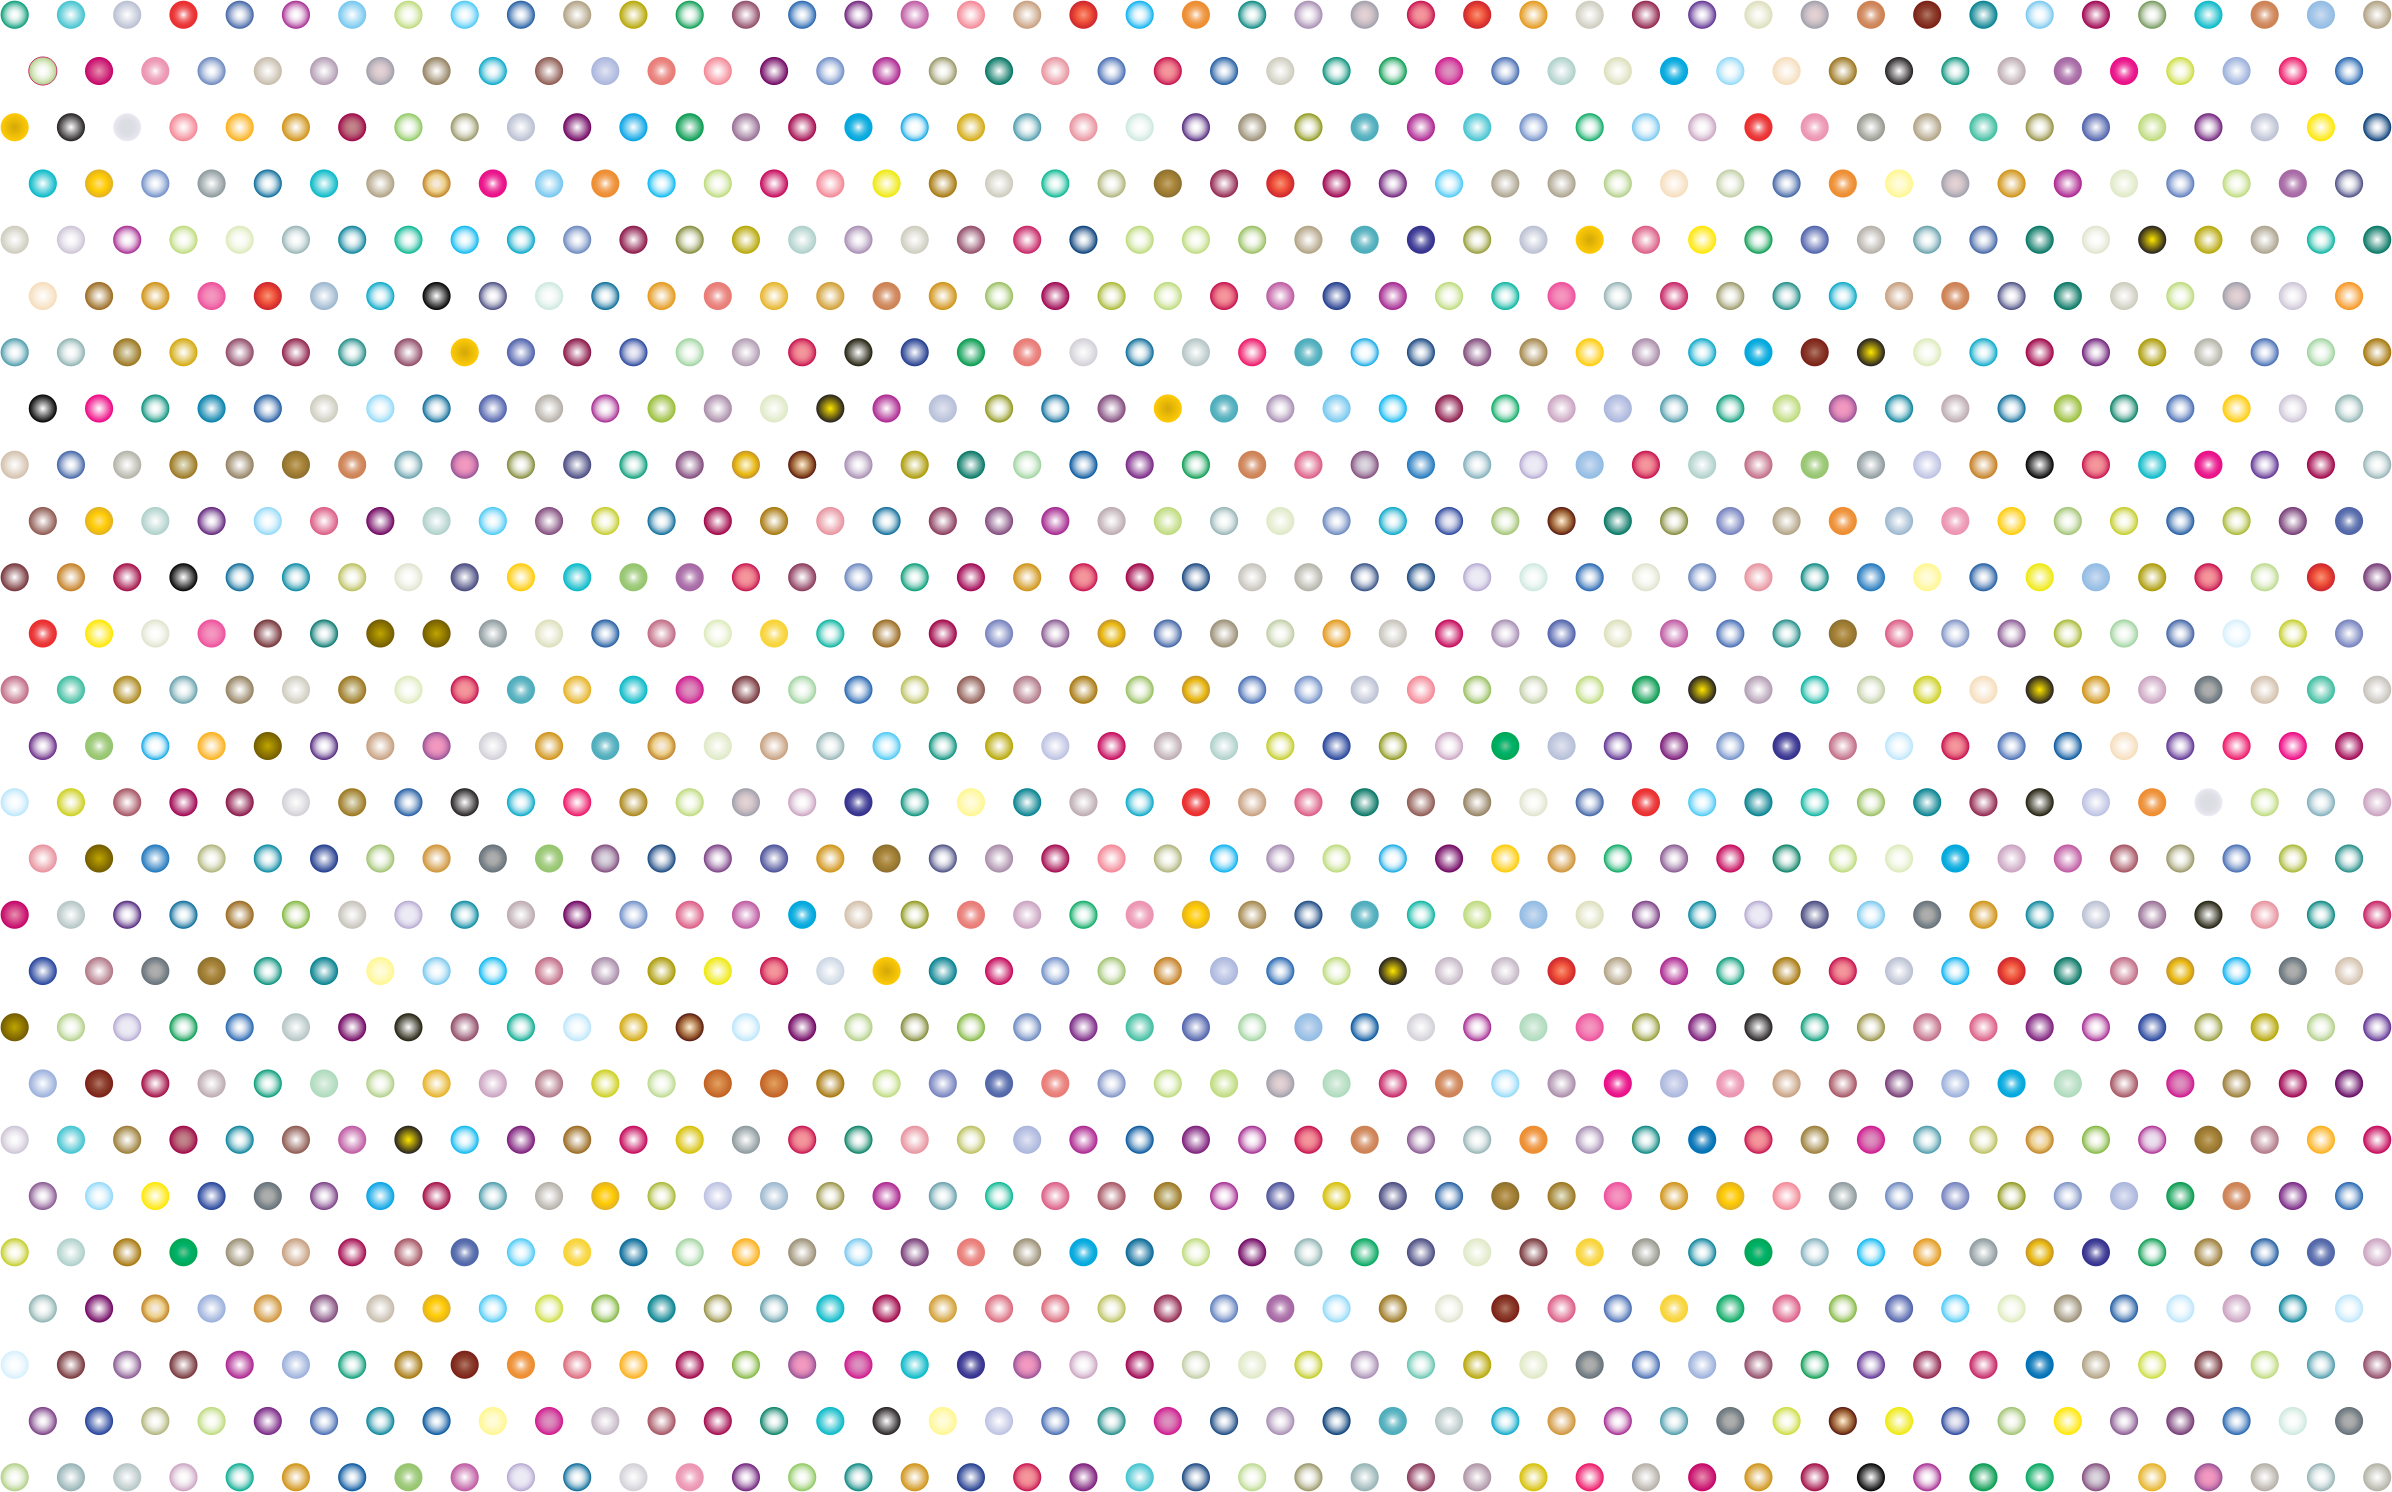 Polka Dot Background Png Transparent Polka Dot Background - Clip Art Library